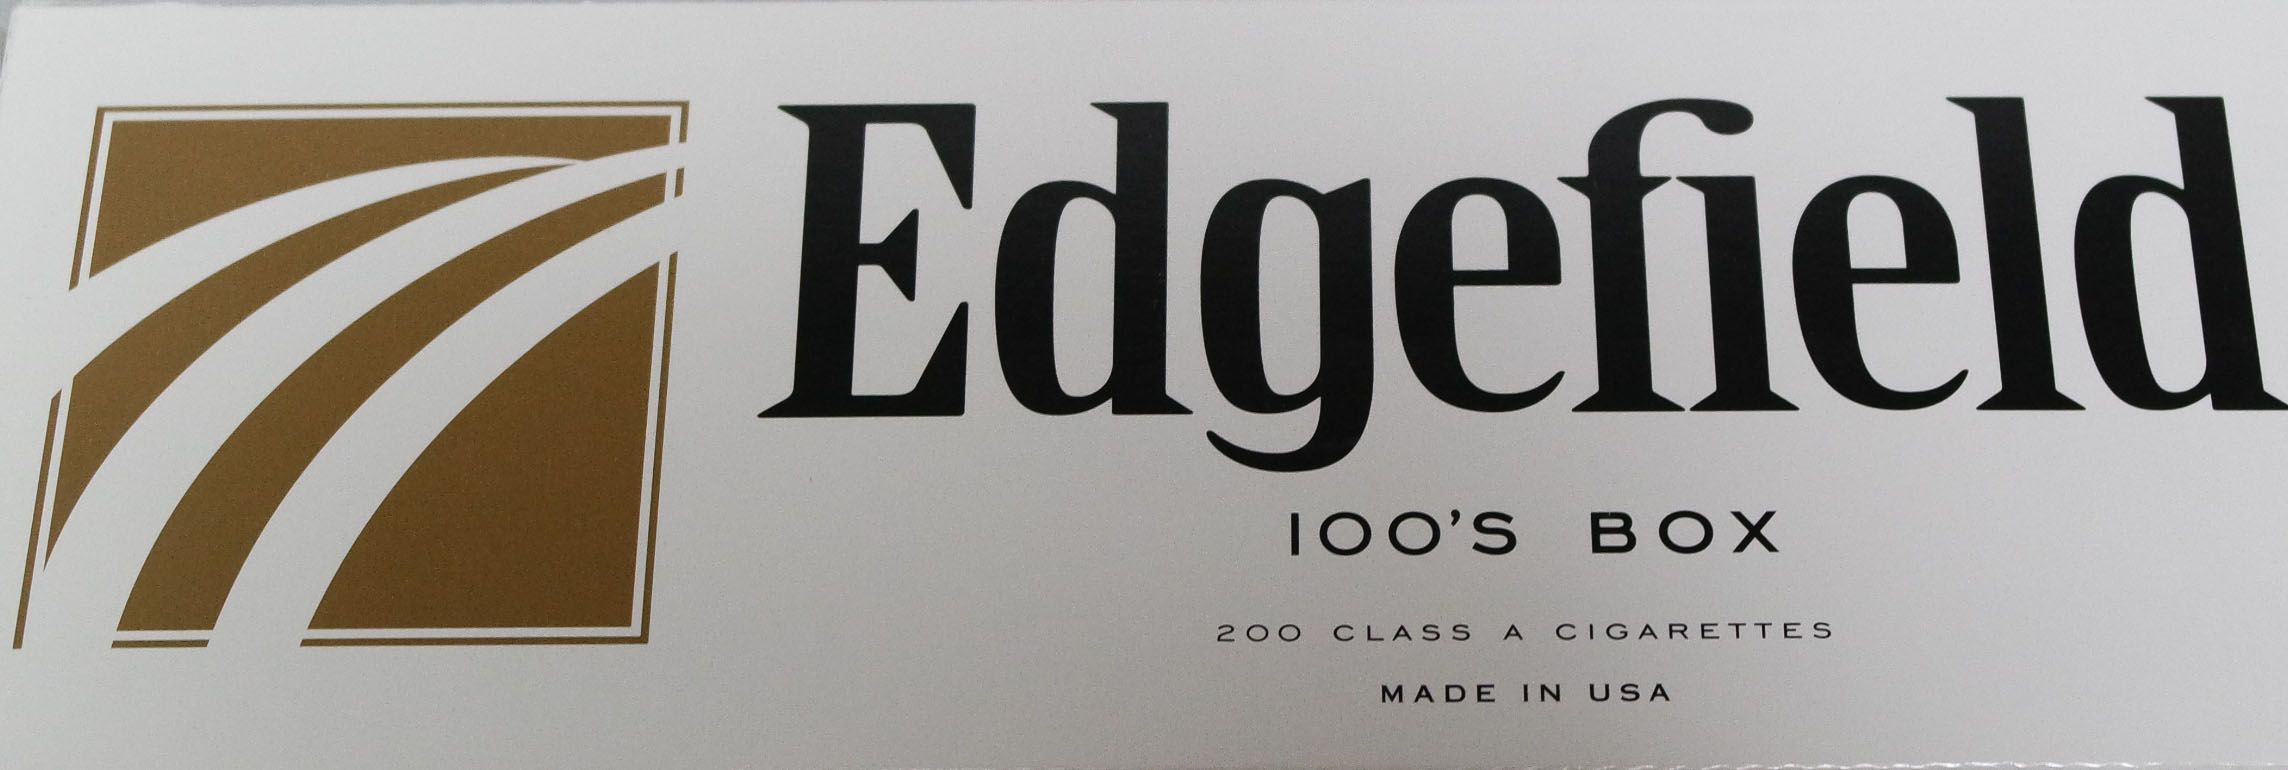 Edgefield gold 100 box